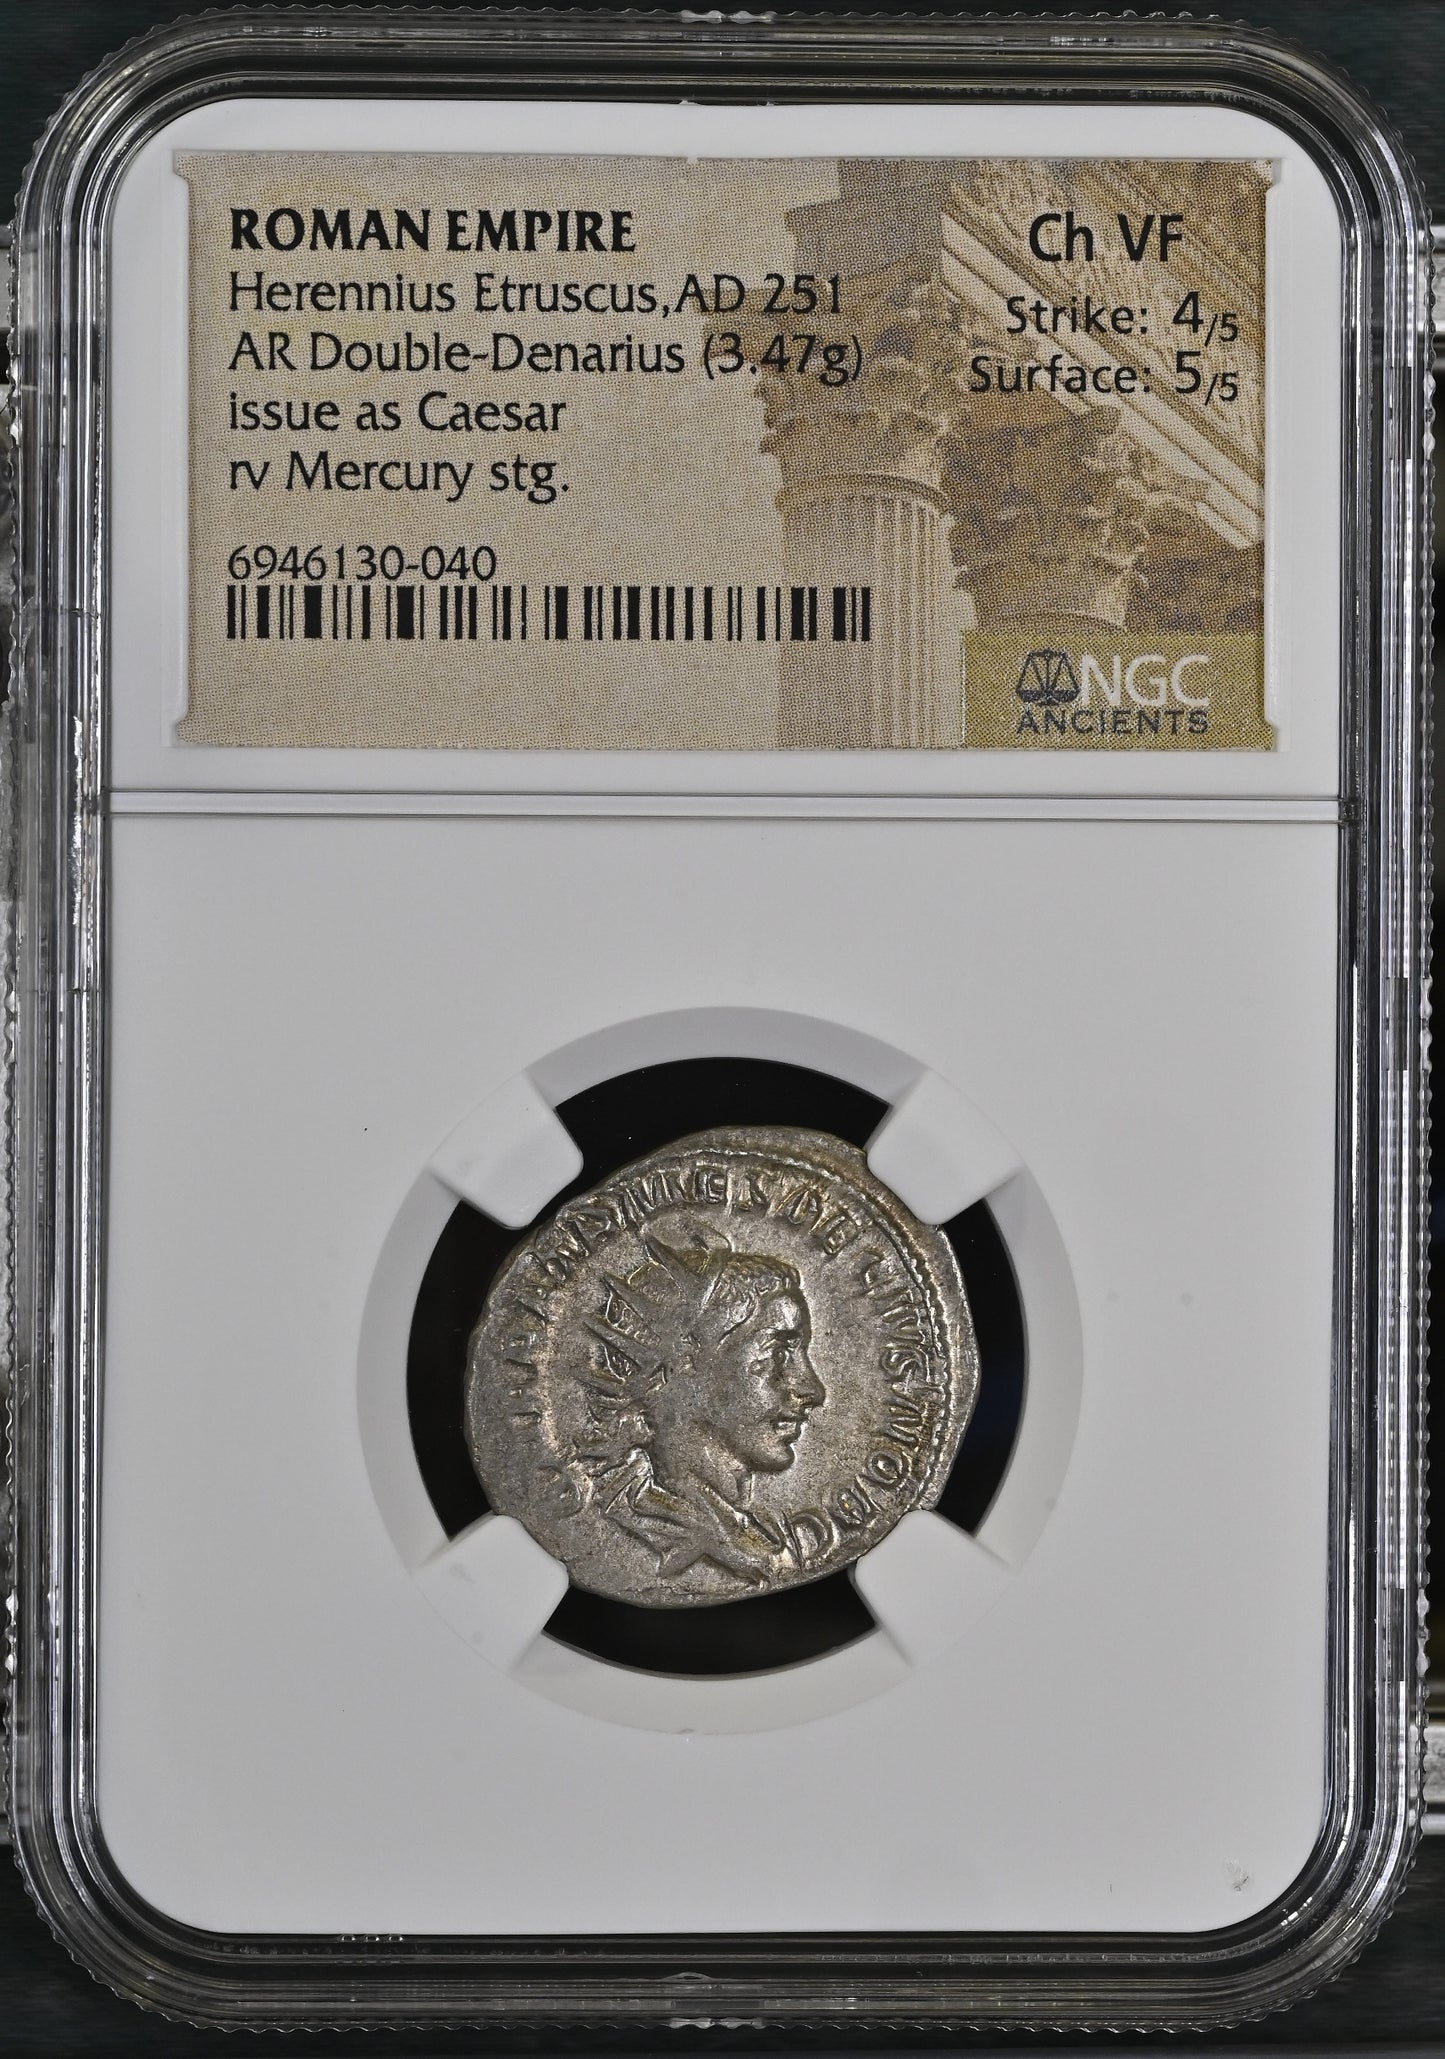 Roman Empire - Herennius Etruscus - Silver Double-Denarius - NGC Ch VF - RIC:142